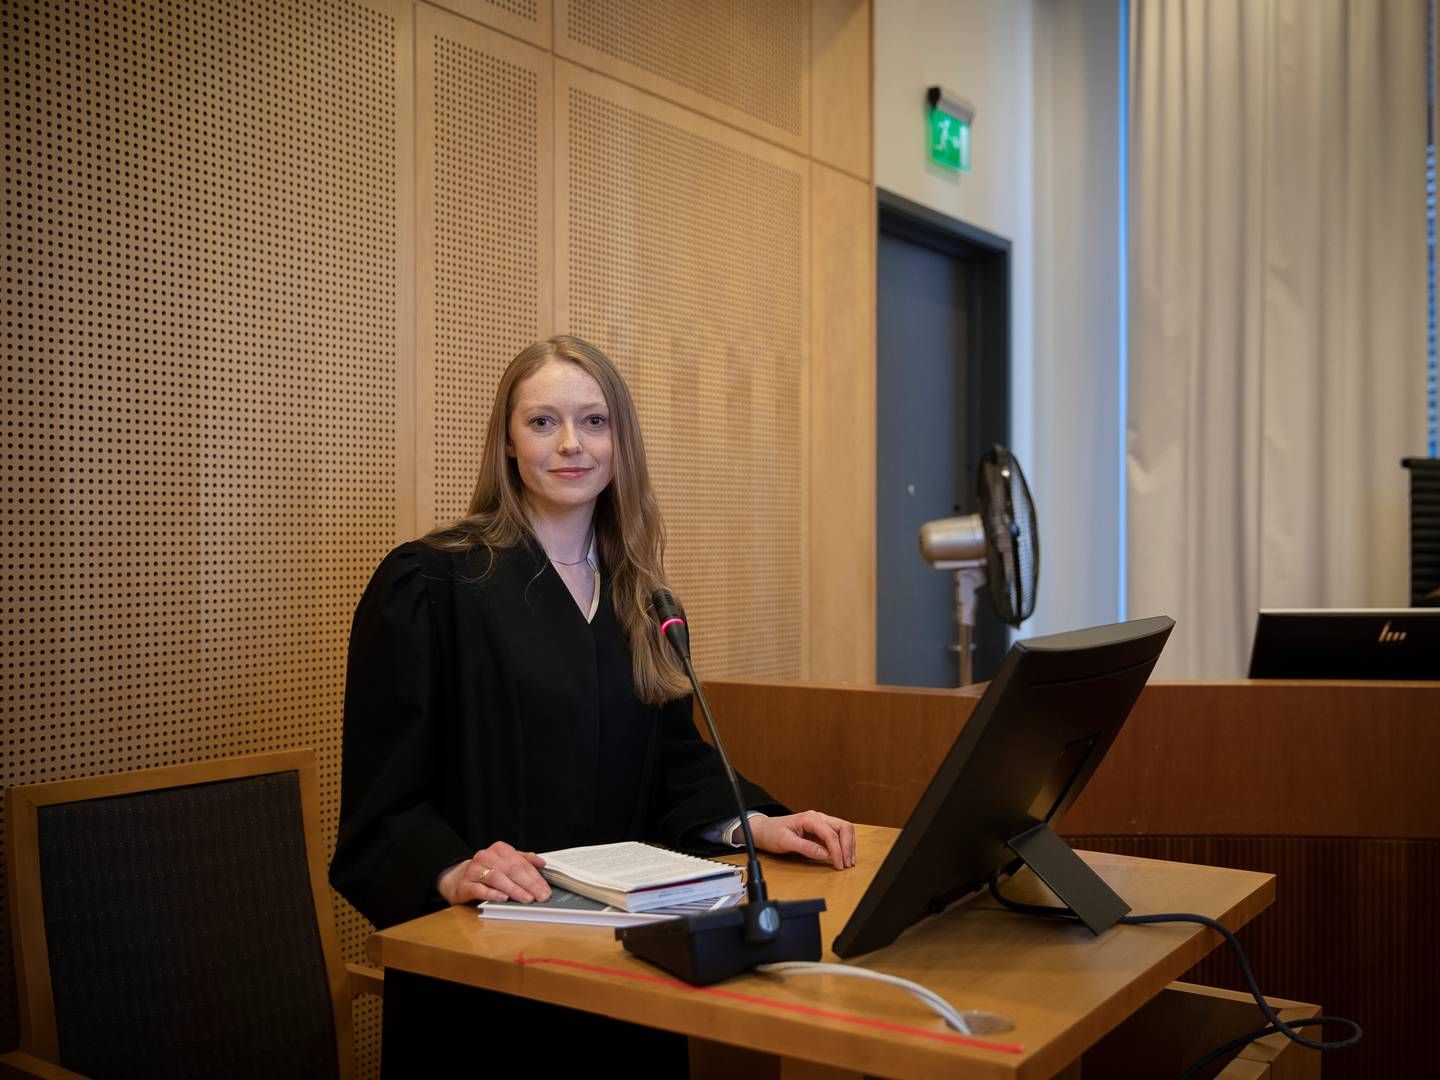 OPPRYKK: Line Isabell Sivertsen Rytter er ny partner i advokatfirmaet Teigstad. | Foto: Advokatfirmaet Teigstad